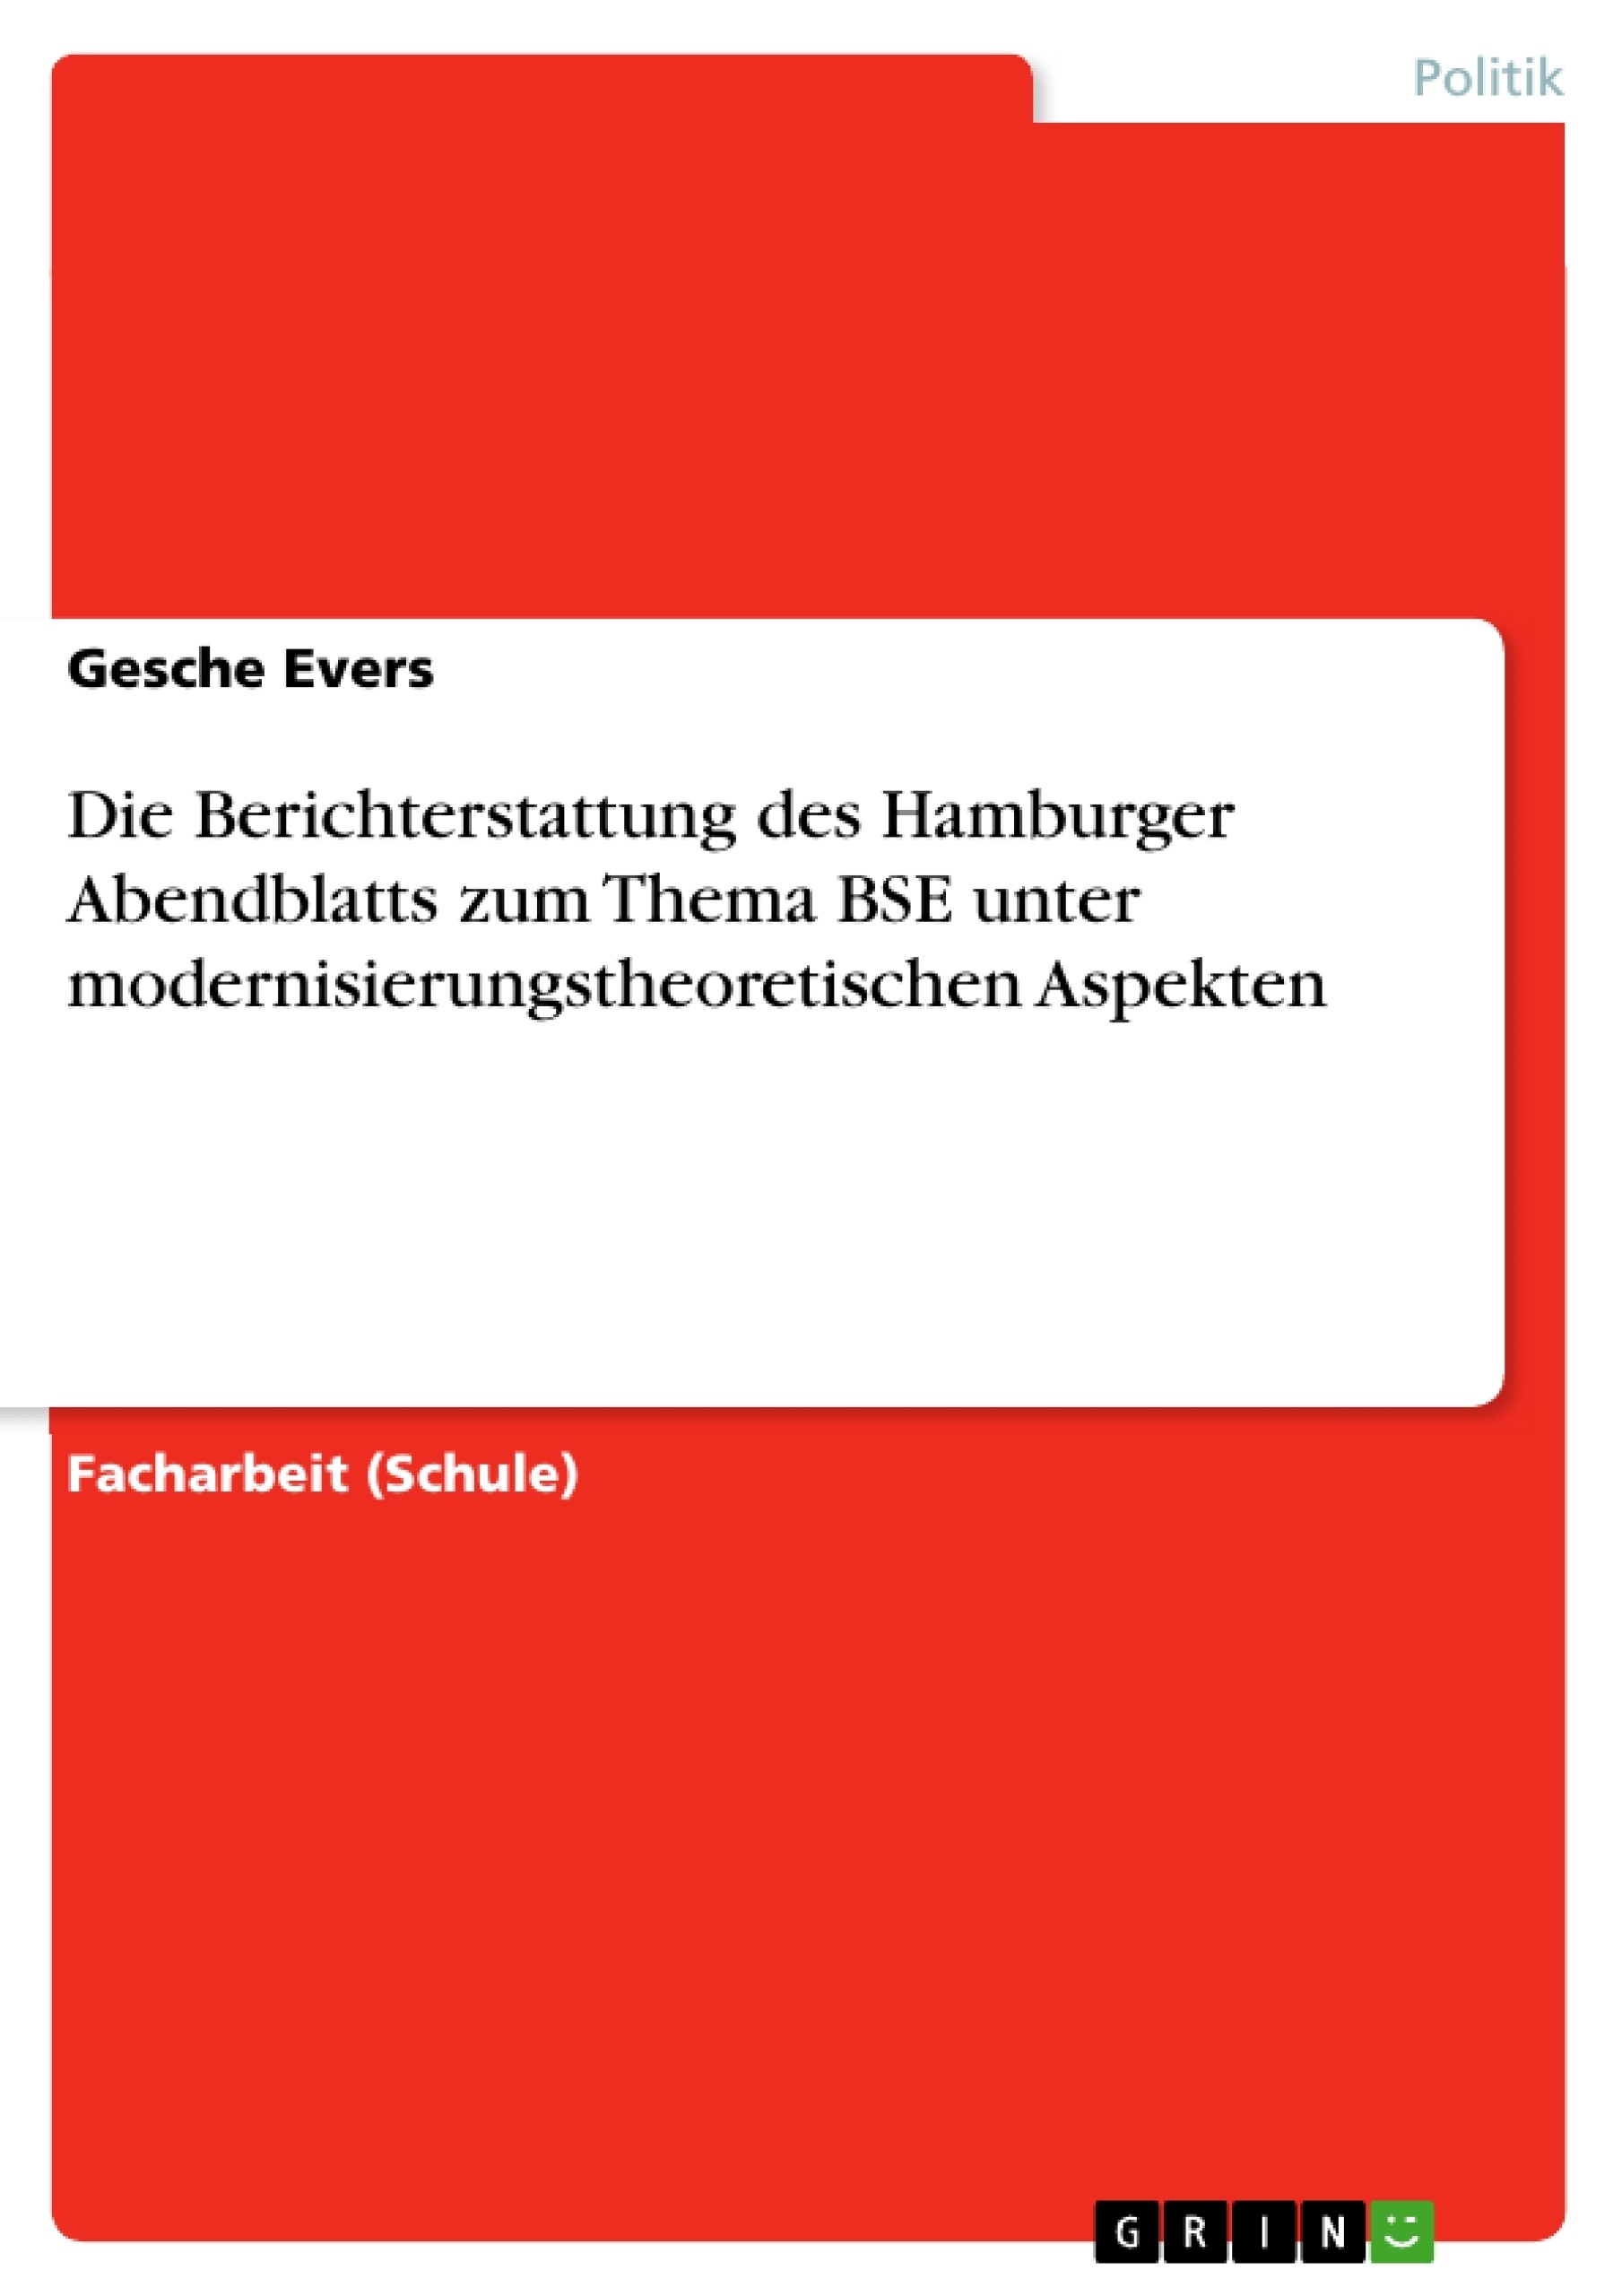 Title: Die Berichterstattung des Hamburger Abendblatts zum Thema BSE unter modernisierungstheoretischen Aspekten